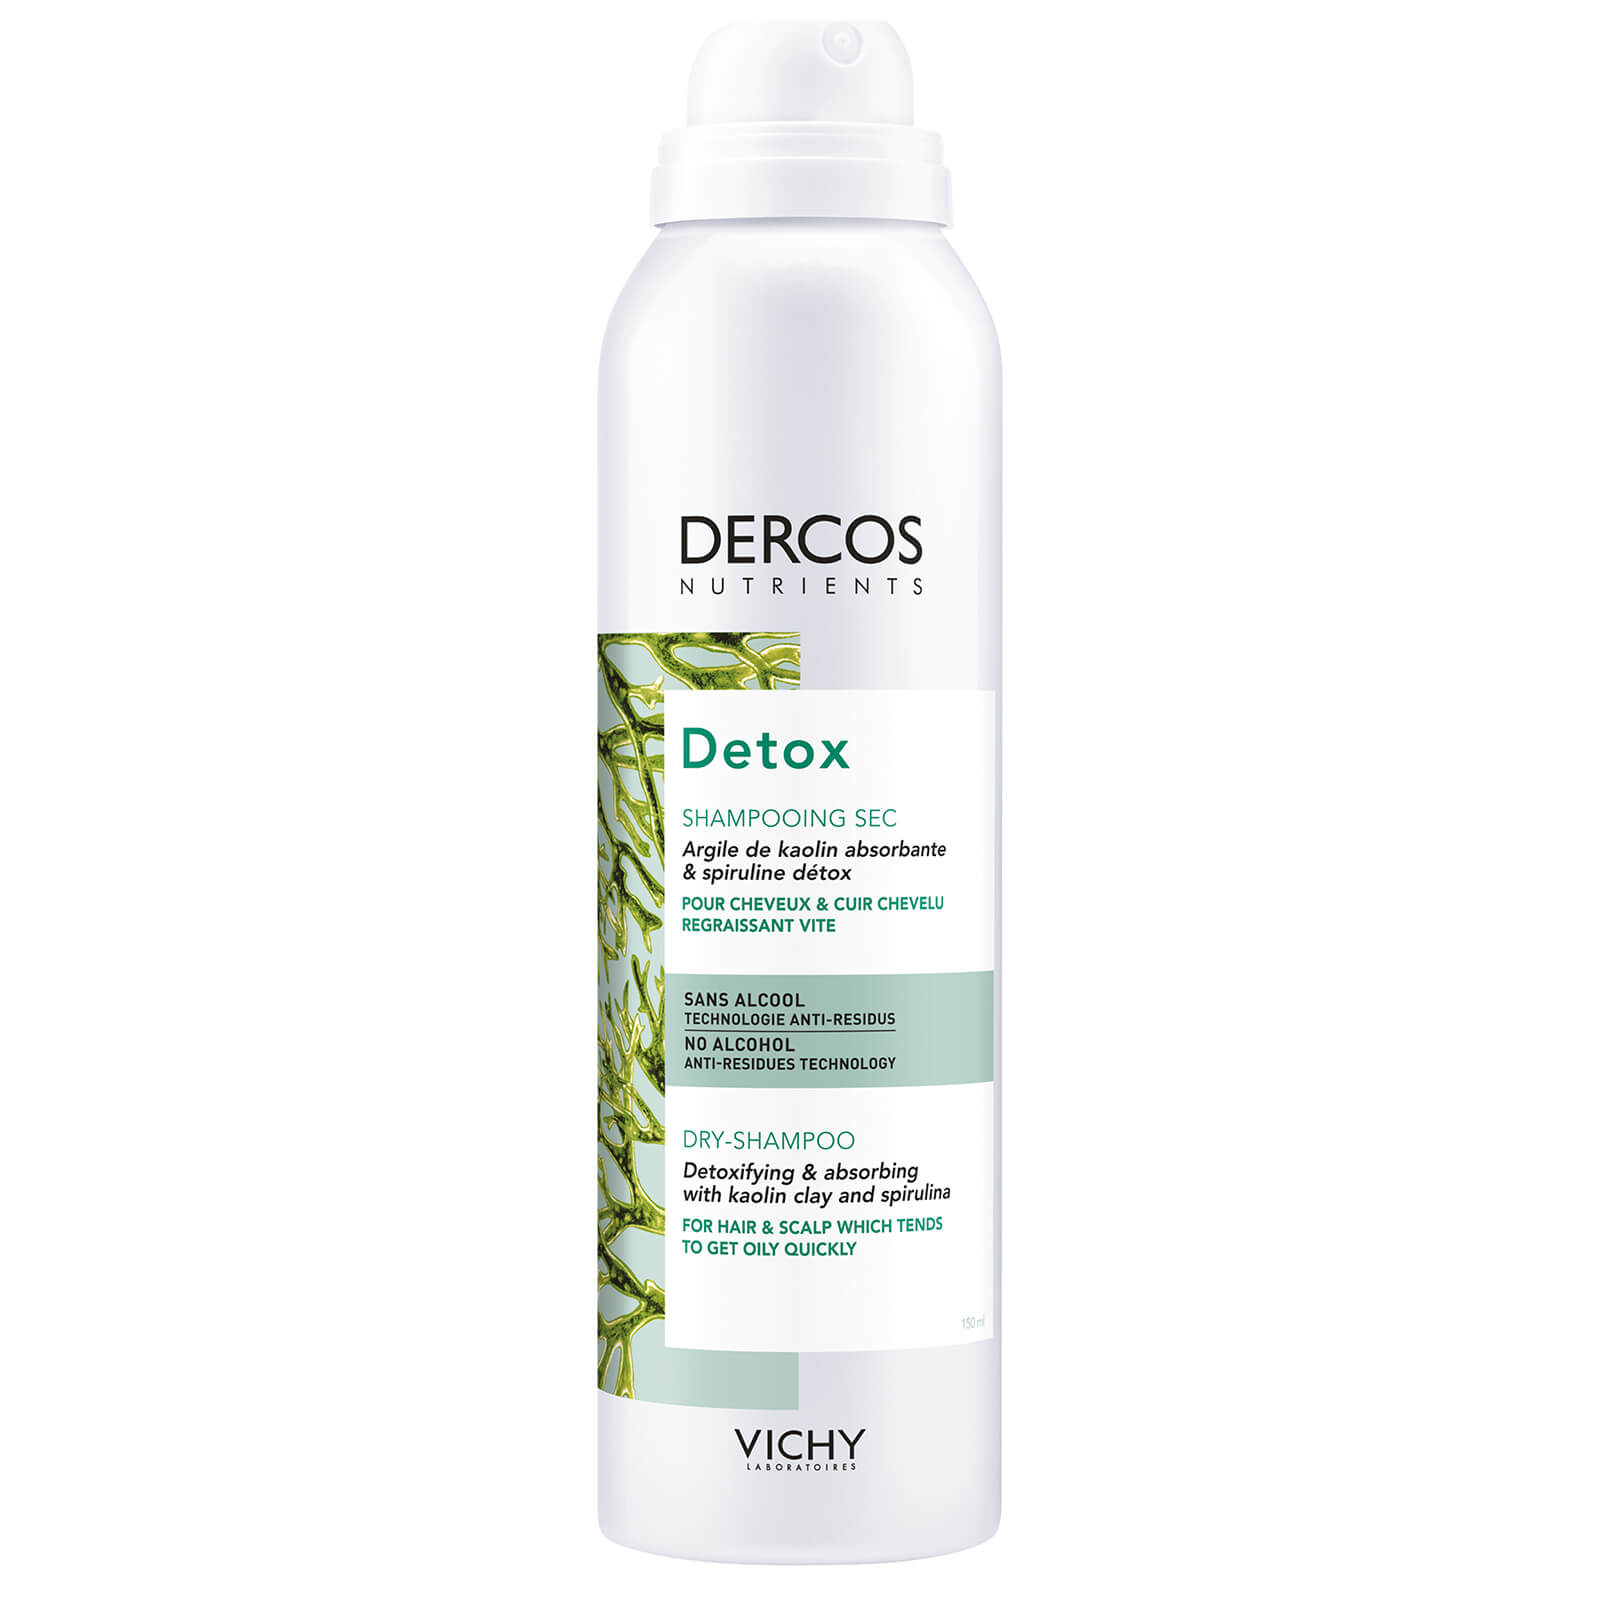 Vichy Dercos Nutrients shampoo secco purificante